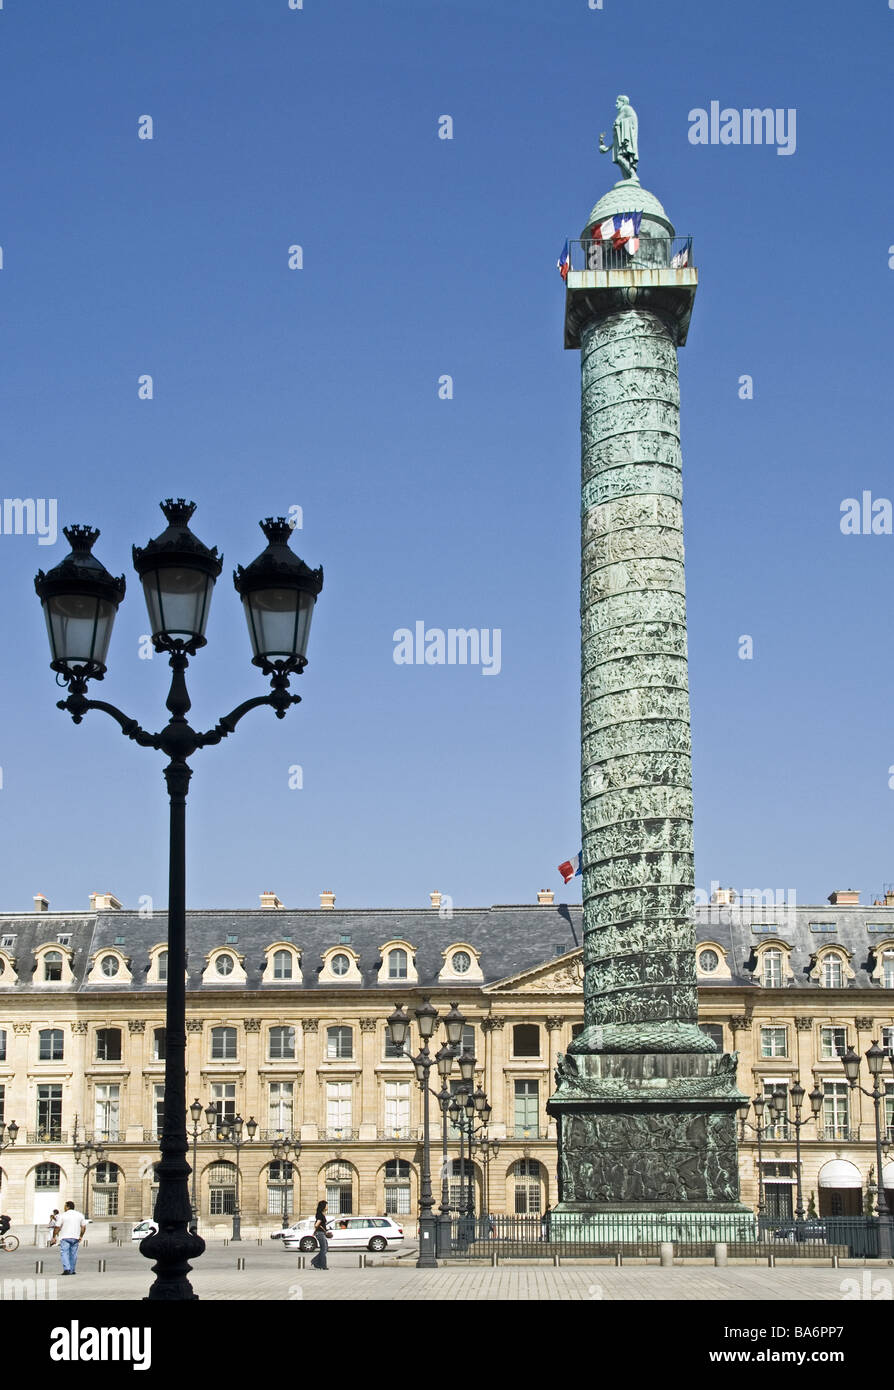 France Paris Place Vendome Colonne de la Grande army capital city center place column Siegessäule bronze-column relief statue Stock Photo